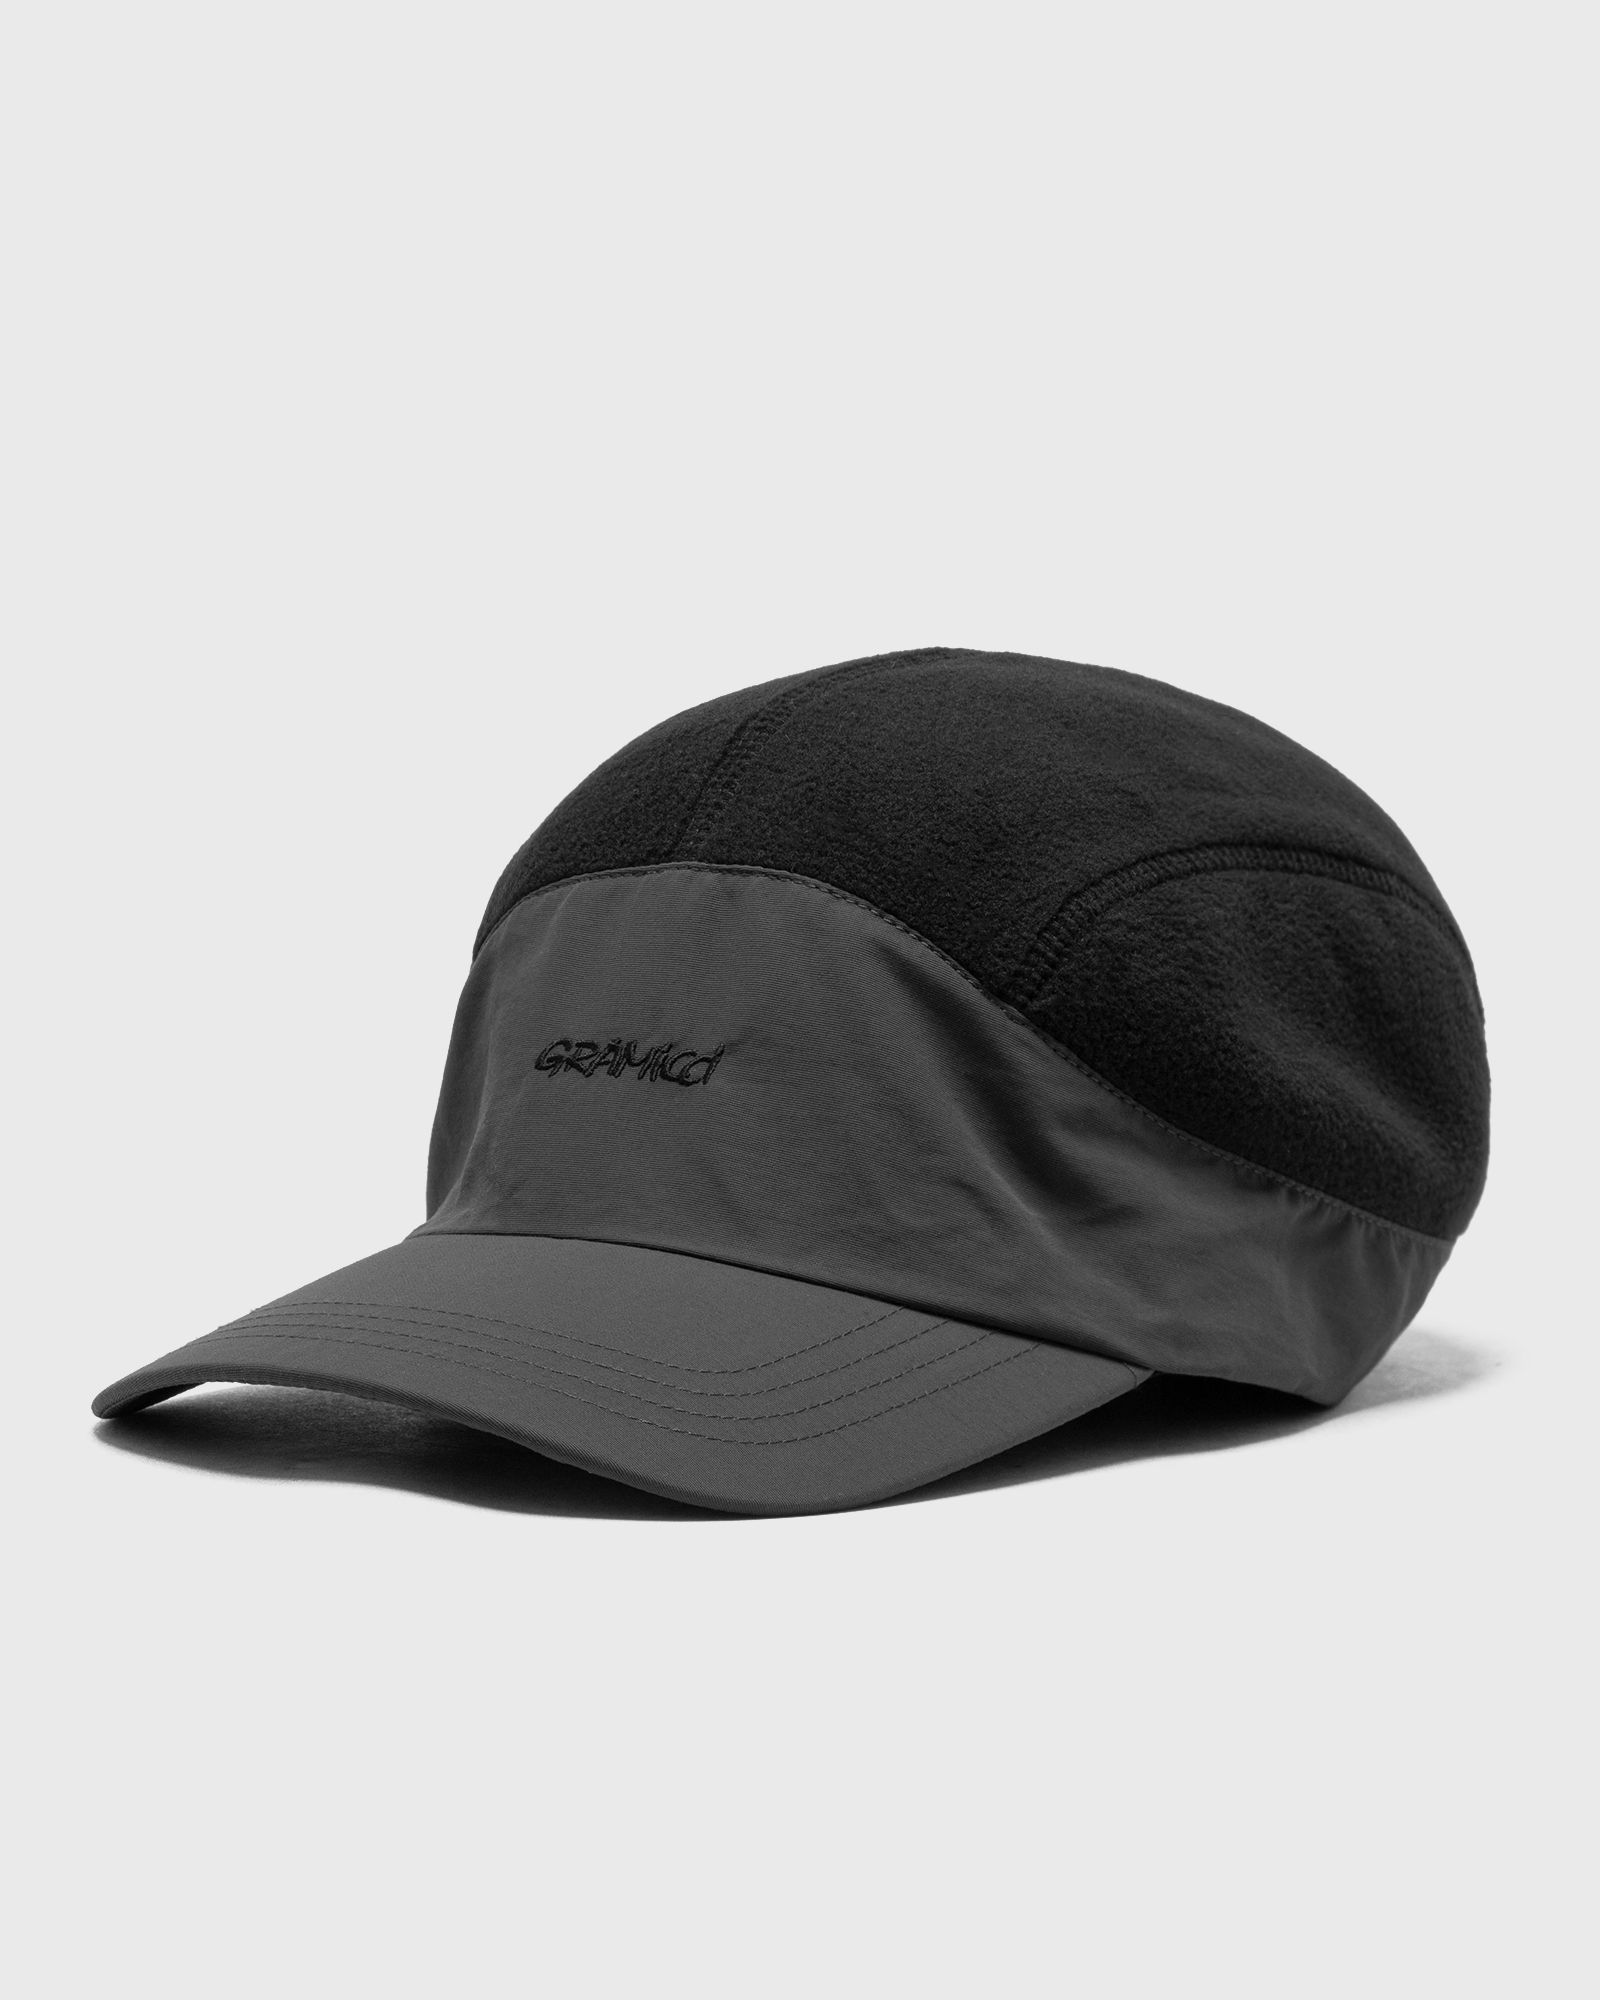 Gramicci - polartec® cap men caps black in größe:one size